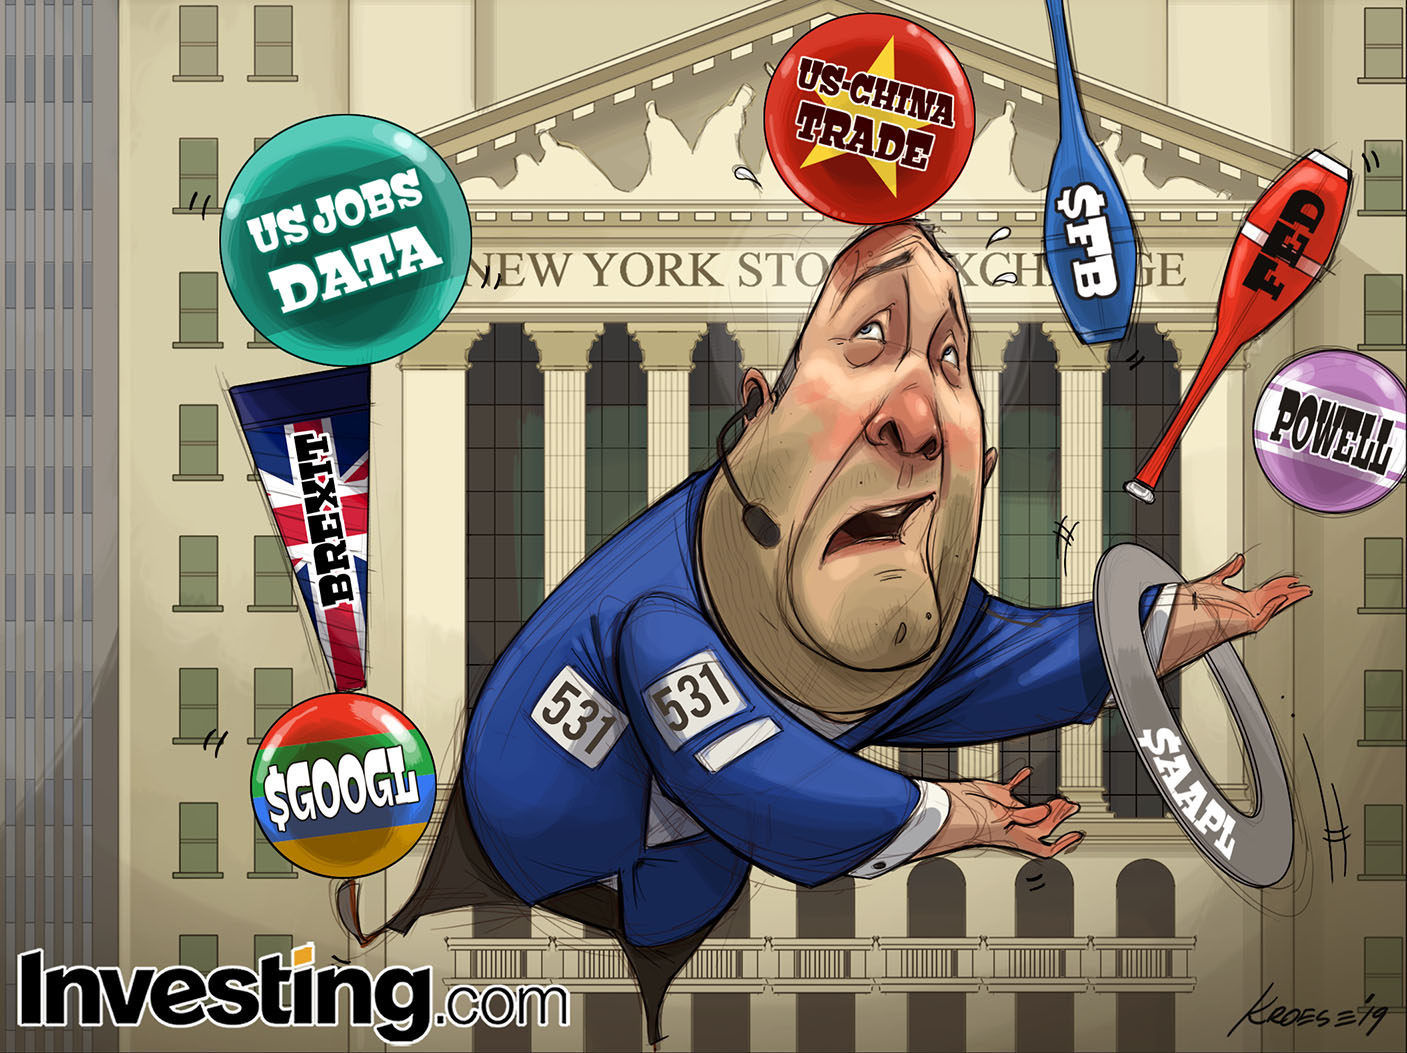 Fed, Balanços e dados: Investidores farão malabarismo nesta semana